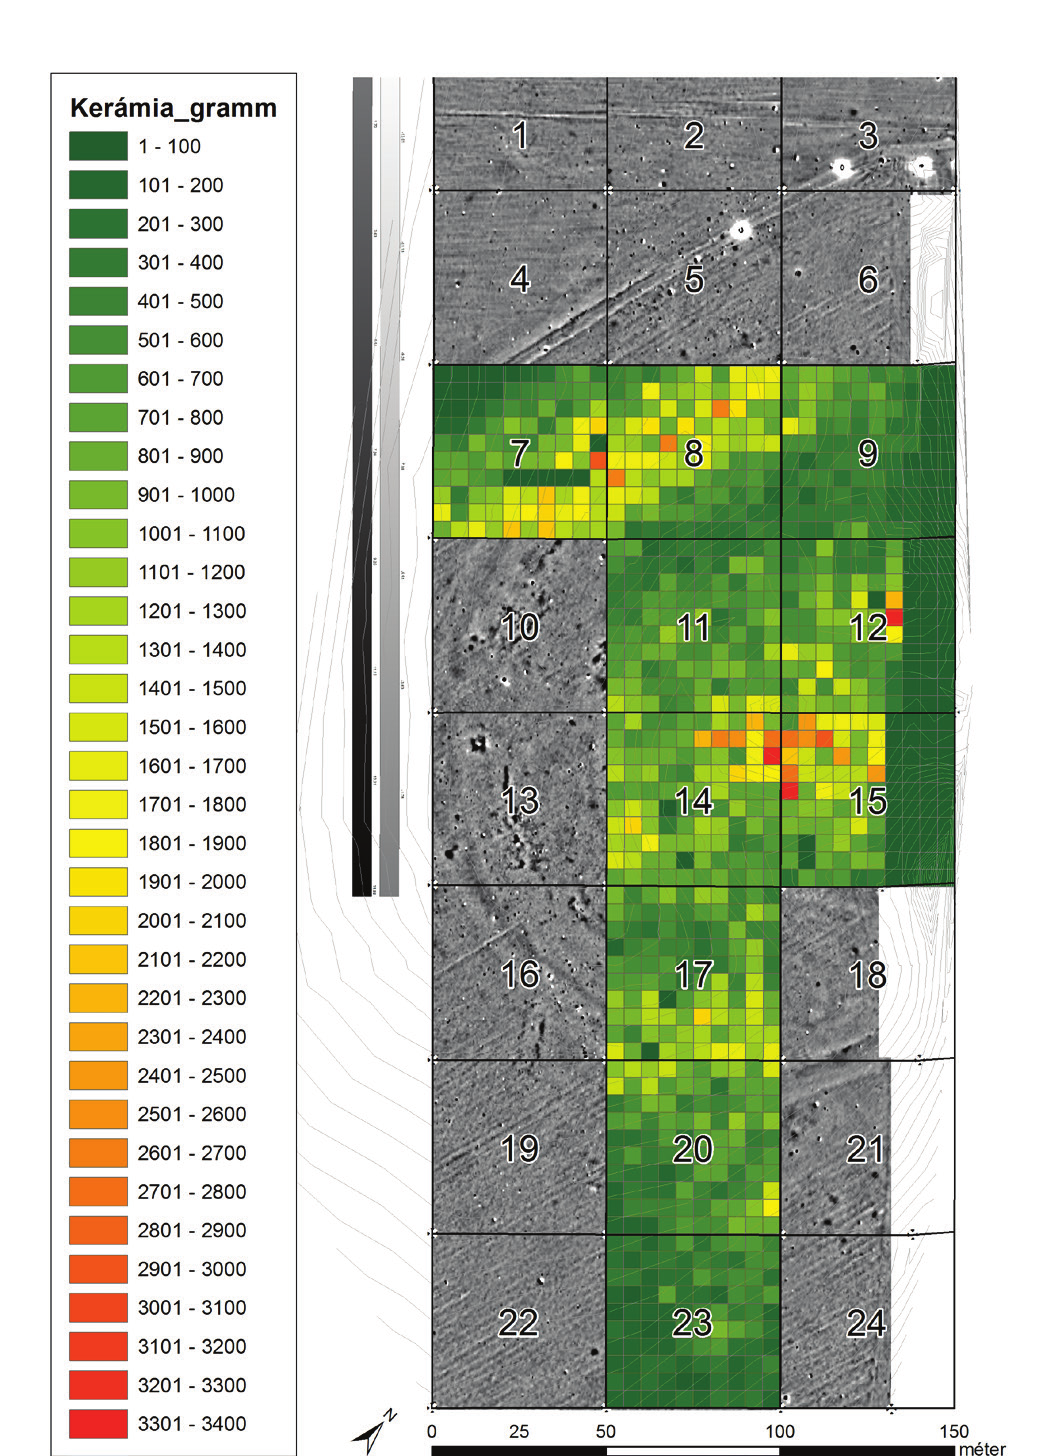 A kerámialeleteket megszámoljuk, súlyukat lemérjük, majd típus és díszítés alapján 2. kép: Tard-Tatárdomb bronzkori települése a Bükk táblázatos formában rögzítjük az adatokat.